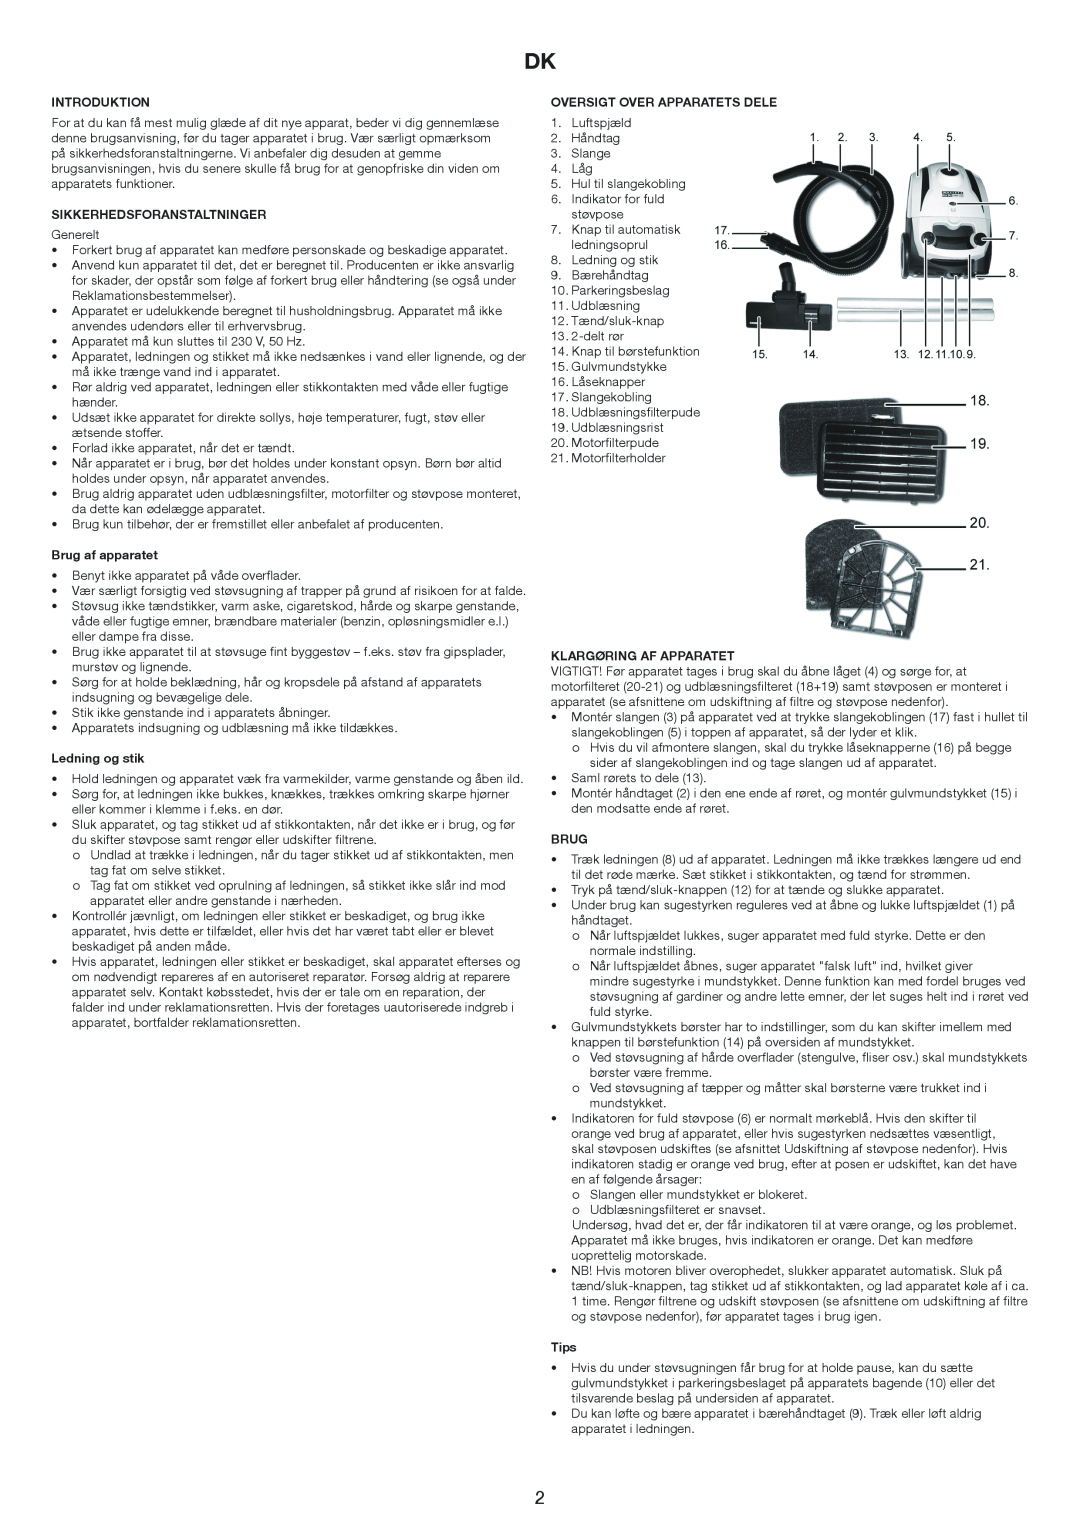 Melissa 640-171 Introduktion, Sikkerhedsforanstaltninger, Brug af apparatet, Ledning og stik, Klargøring Af Apparatet 